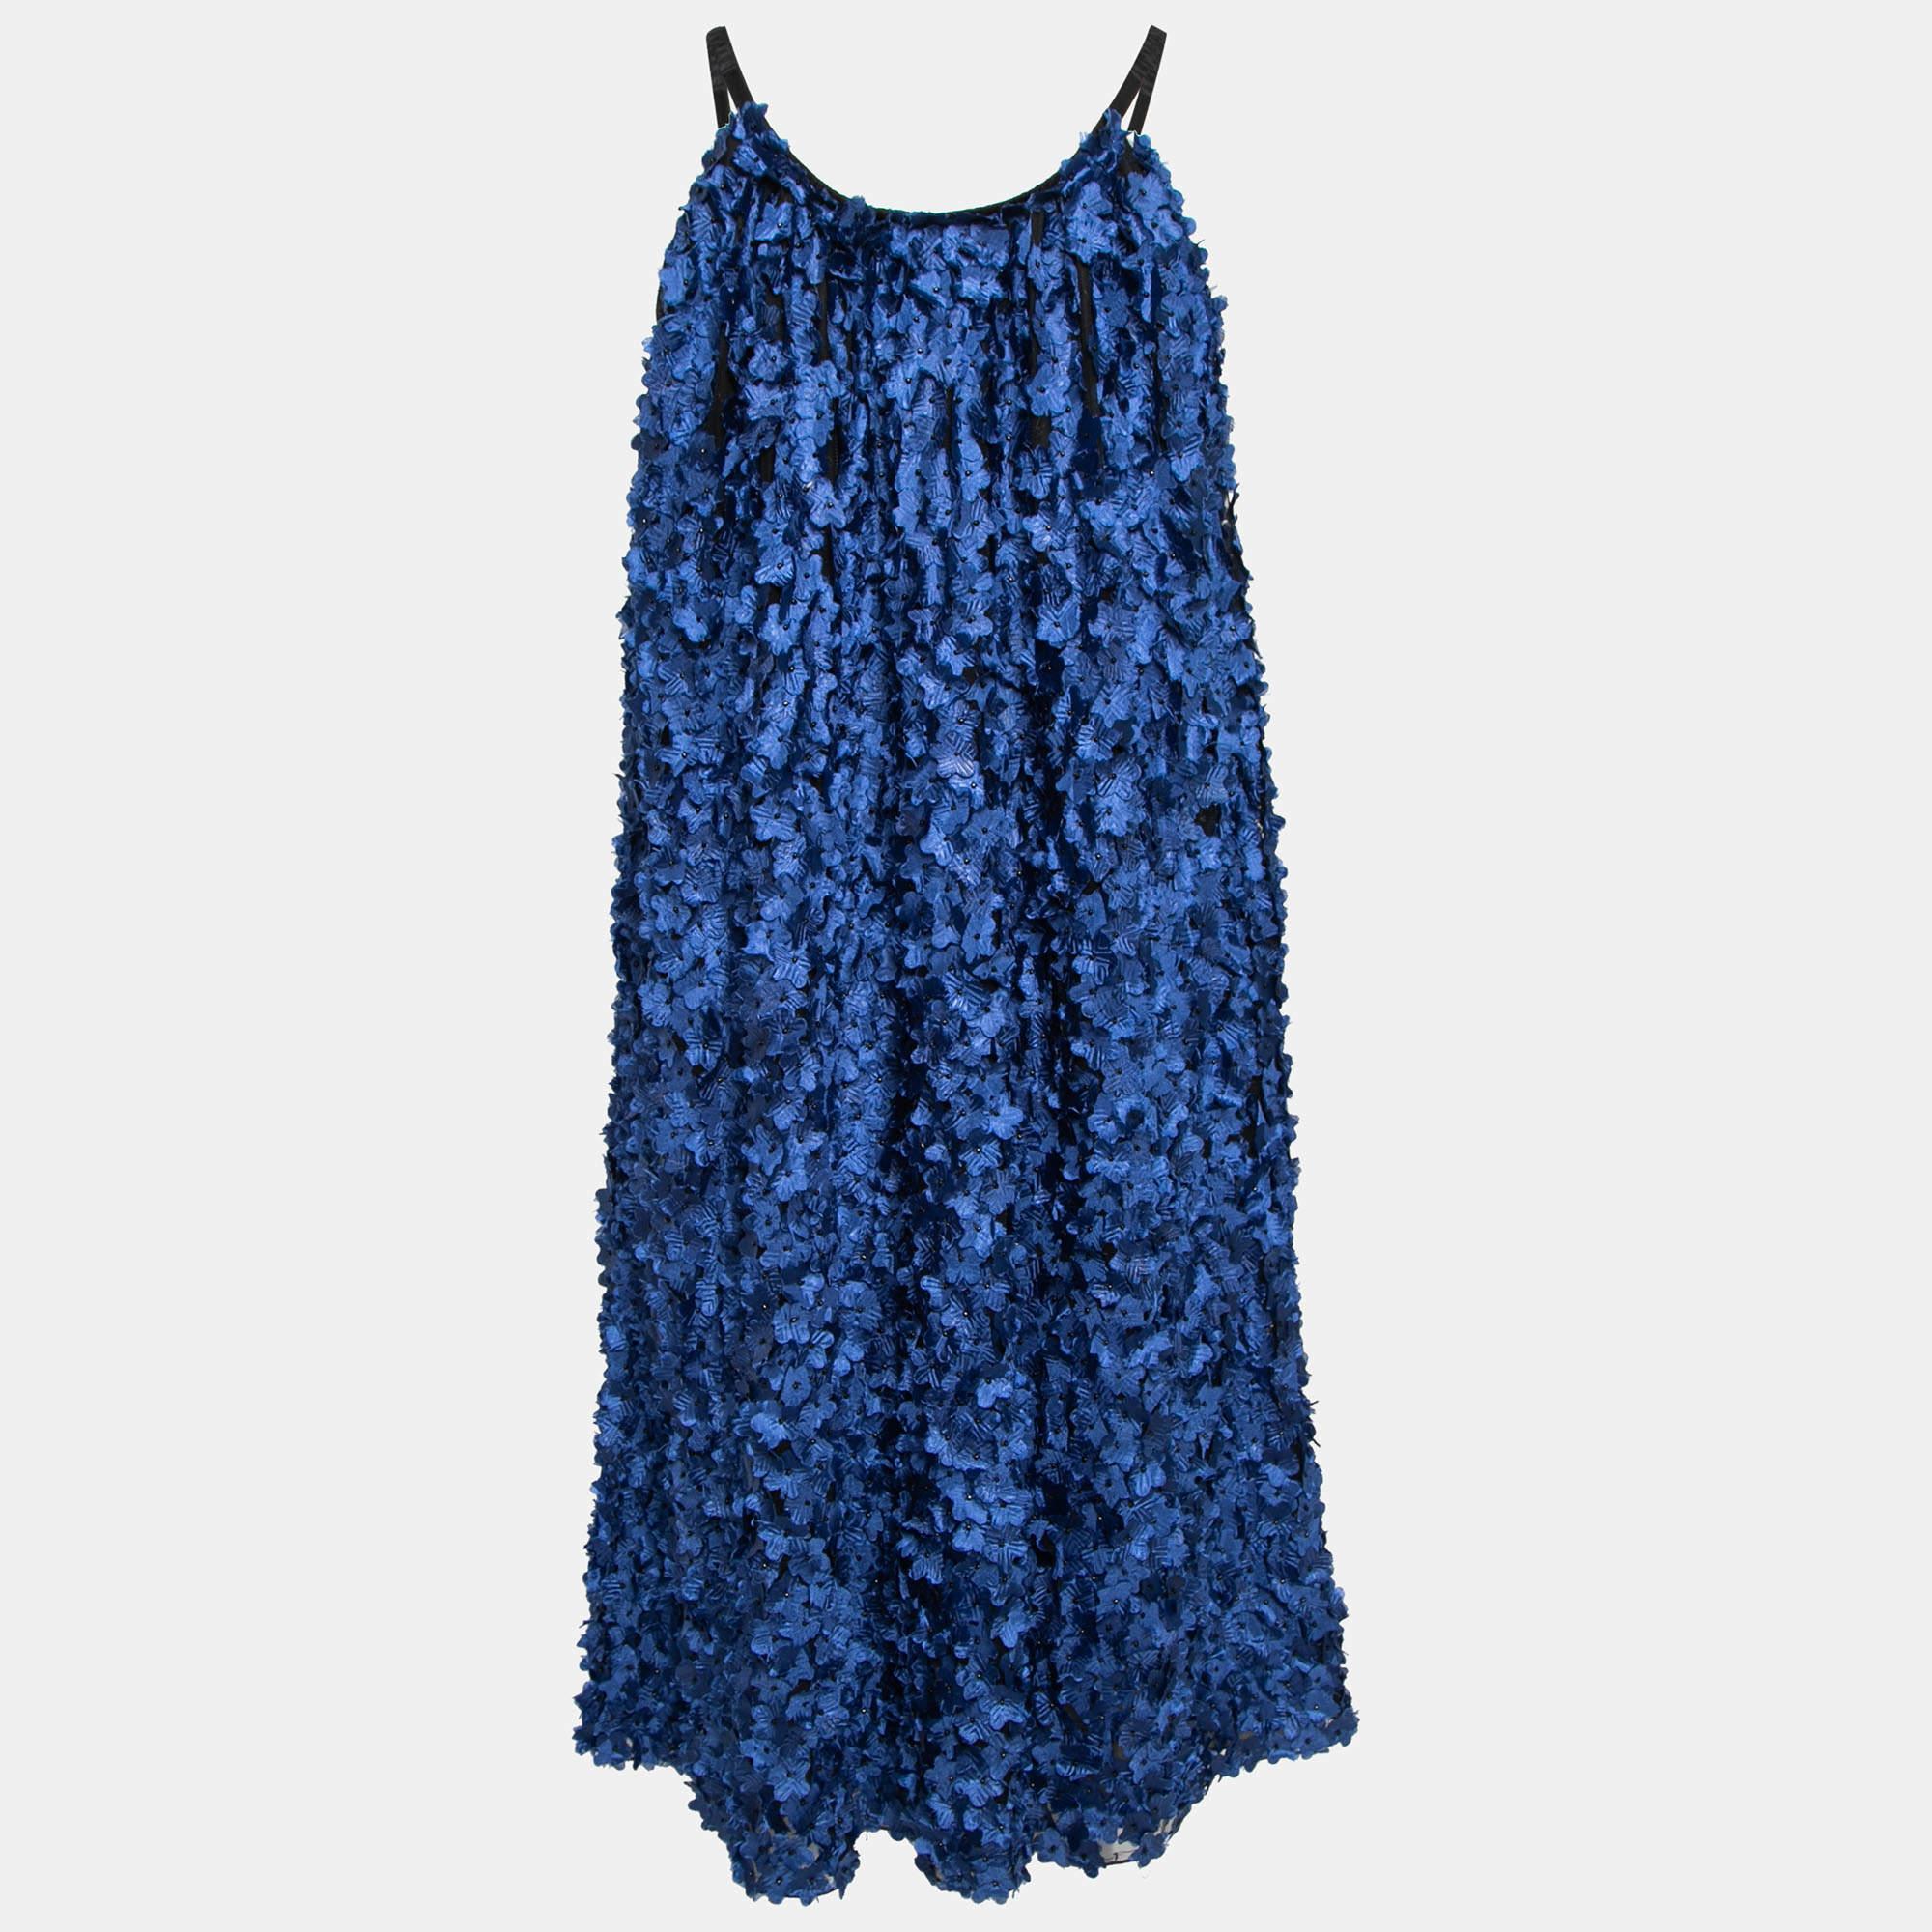 Die Sommerzeit verlangt nach wunderbar fließenden Silhouetten wie diesem Kleid von Giorgio Armani. Dieses aus blauem Tüllstoff genähte Etuikleid ist mit Blumenapplikationen versehen und ärmellos geschnitten. Sie ist mit zwei funktionellen Taschen